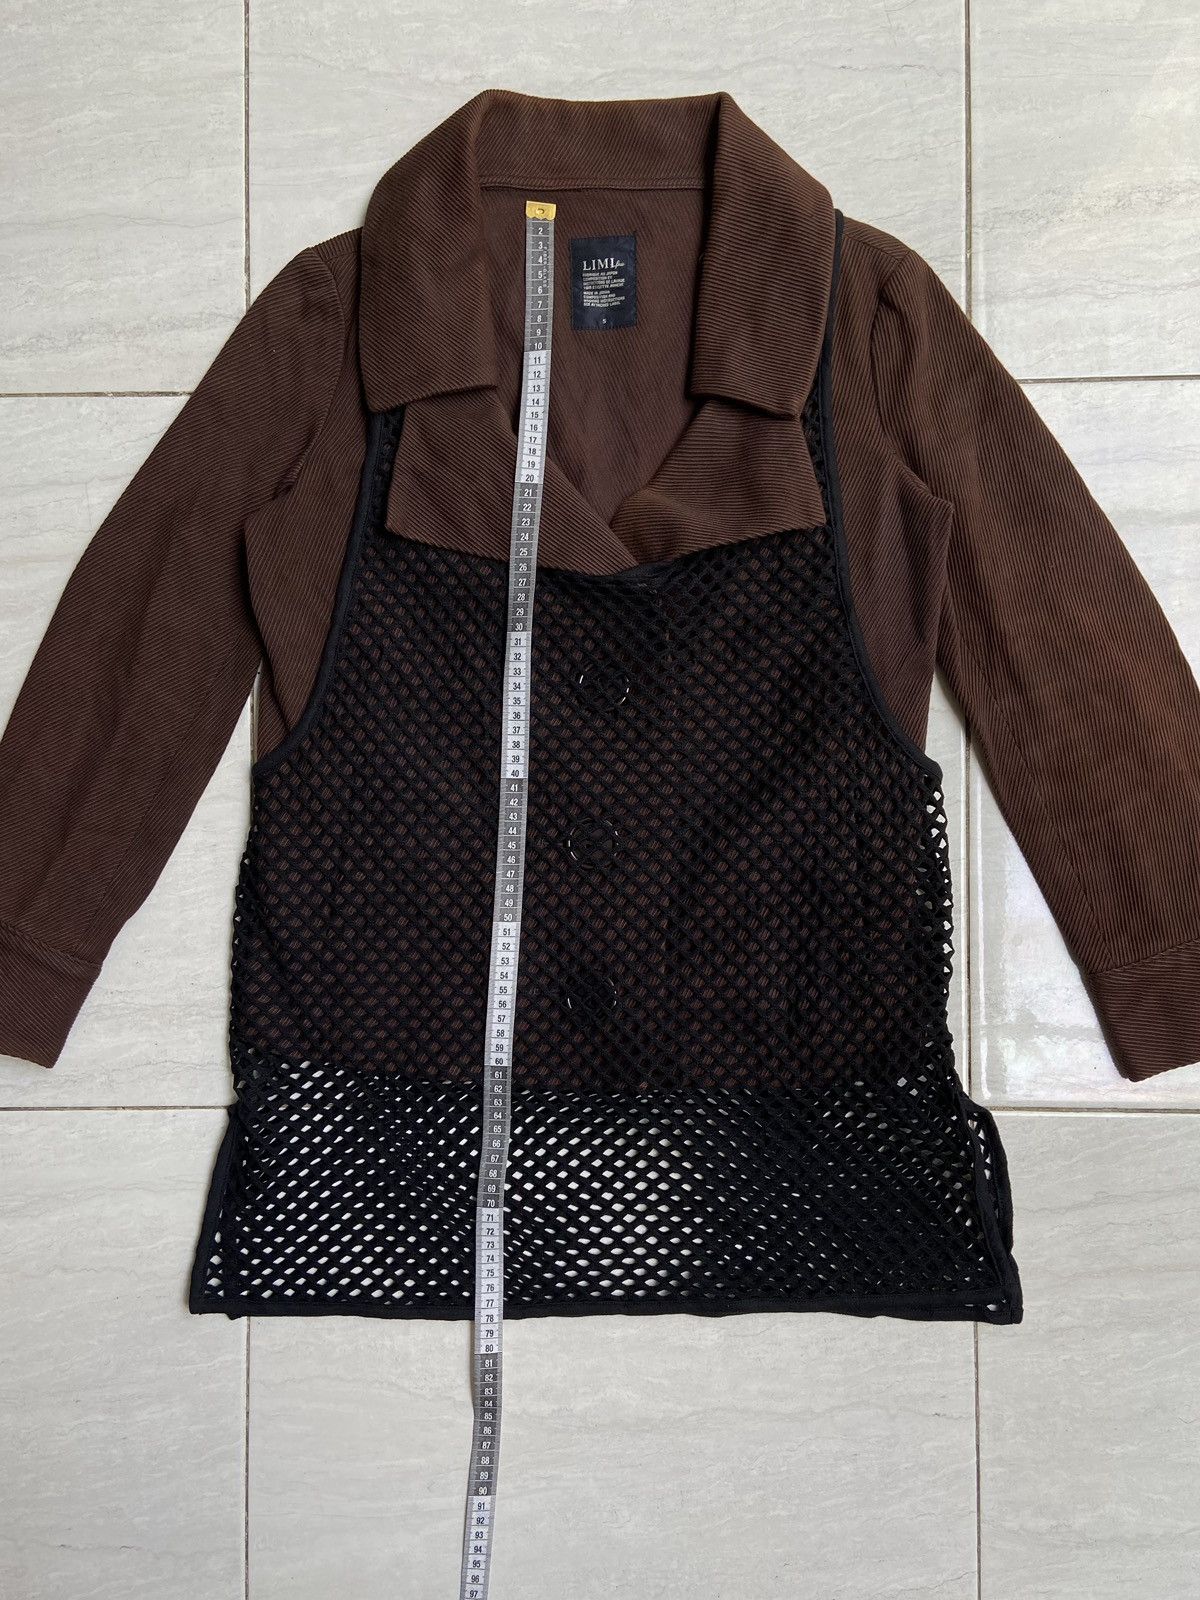 Yohji Yamamoto LIMI FEU Brown Blazer Vest Size US S / EU 44-46 / 1 - 7 Thumbnail